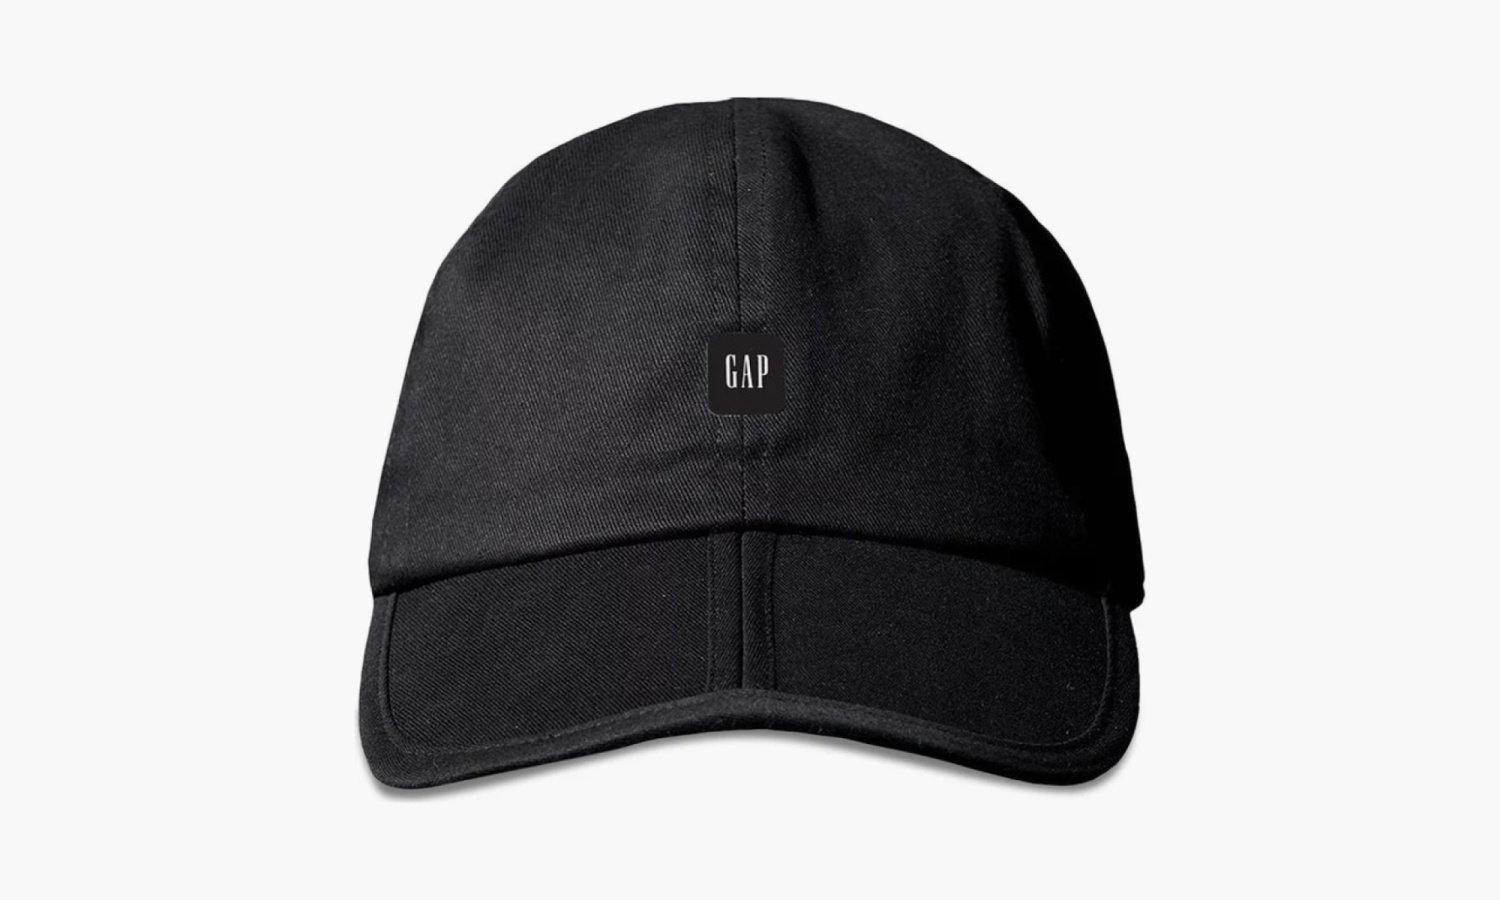 Yeezy x Gap x Balenciaga Foldable Cap "Black" - ONE SIZE